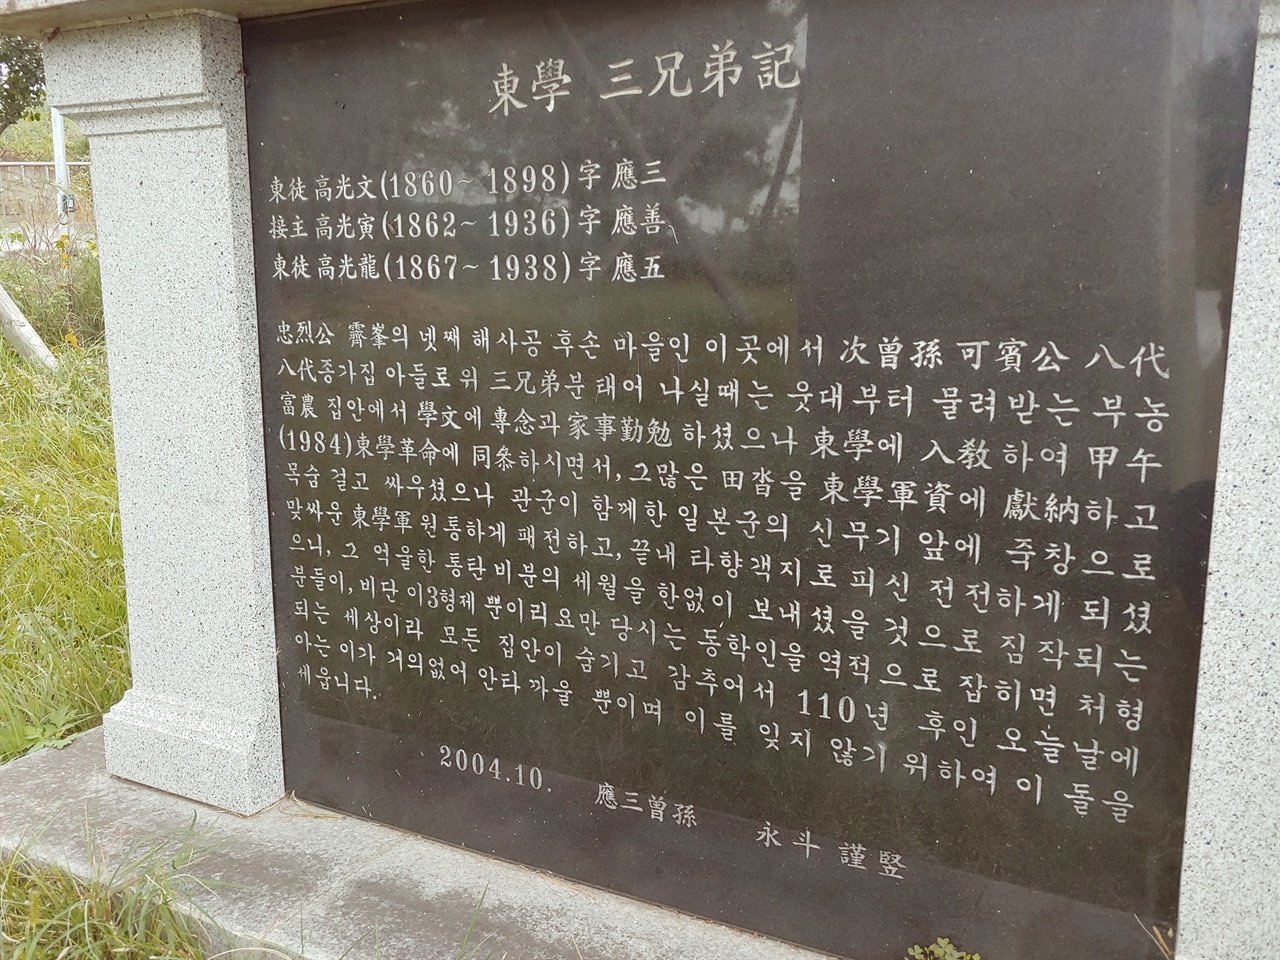 고영두가 2004년 10월에 세운 <동학 3형제기> (광주 동학농민혁명 기념공원 안의 ‘동학농민혁명기념비’ 아래 부분에 새겨져 있음.)